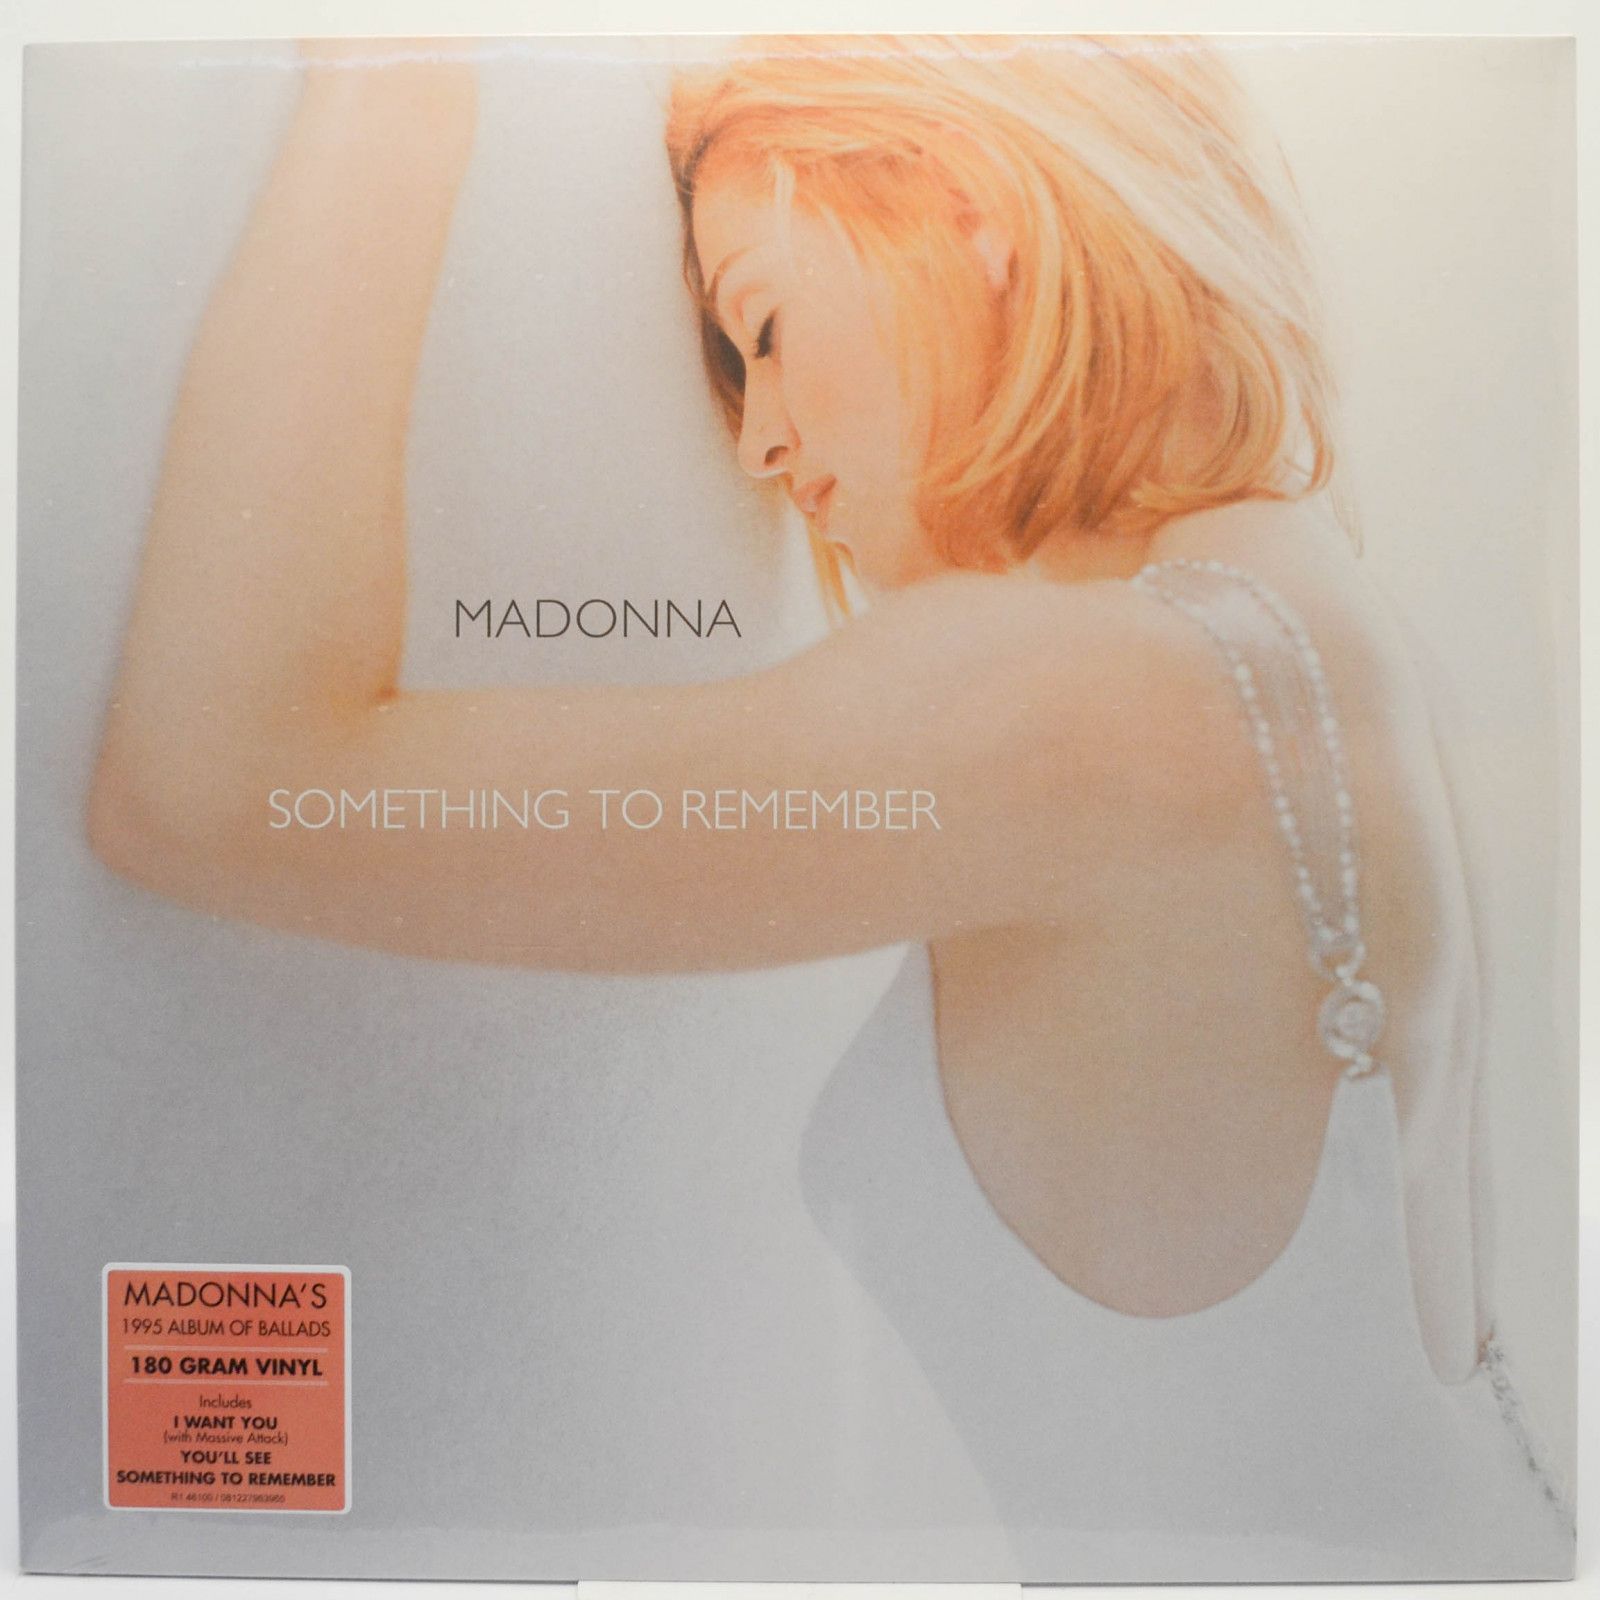 Madonna — Something To Remember, 1995